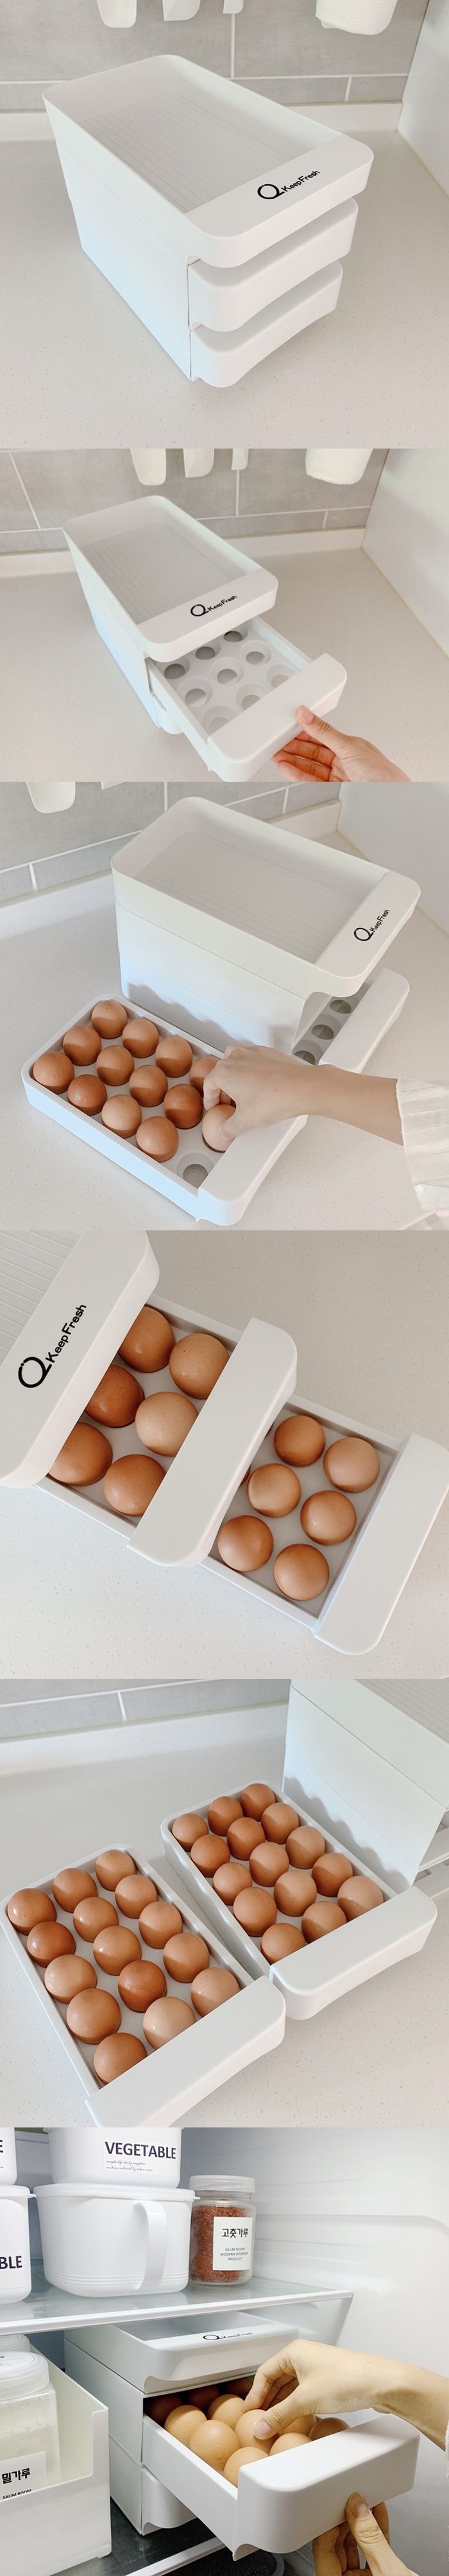 [살림공간] 계란보관함